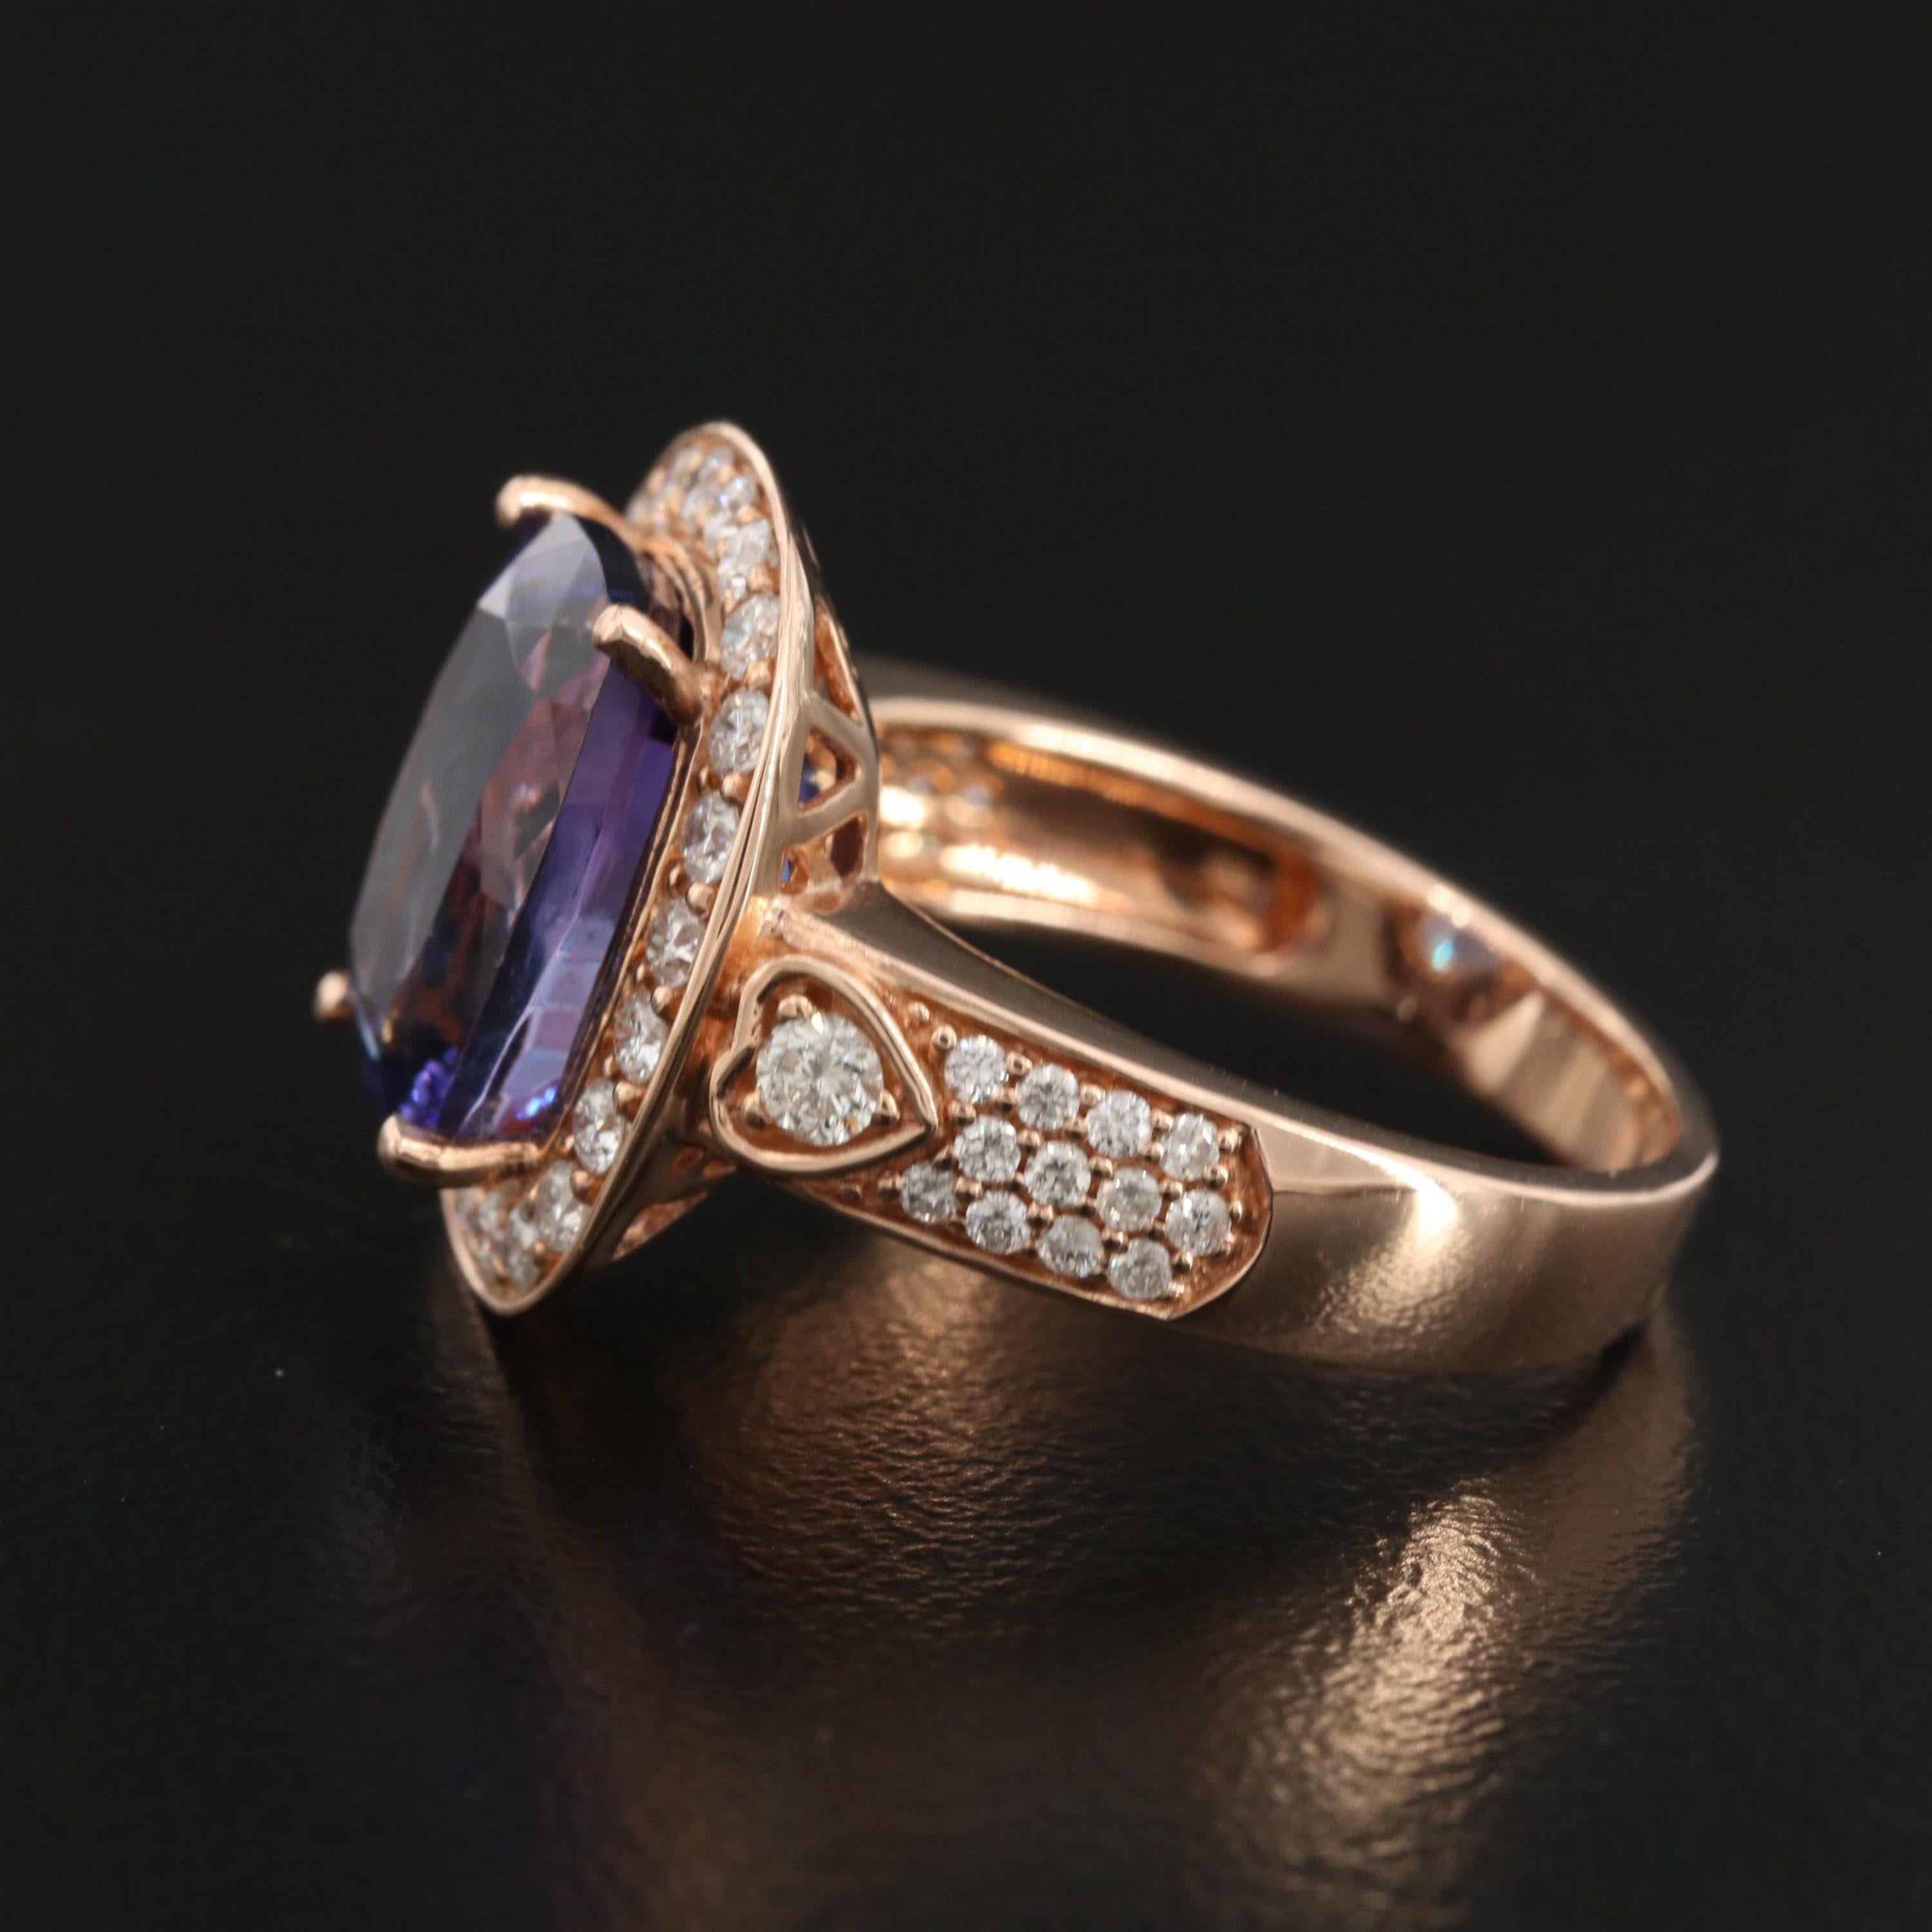 For Sale:  6 Carat Violet Tanzanite Engagement Ring, Halo Diamond Rose Gold Wedding Ring 2